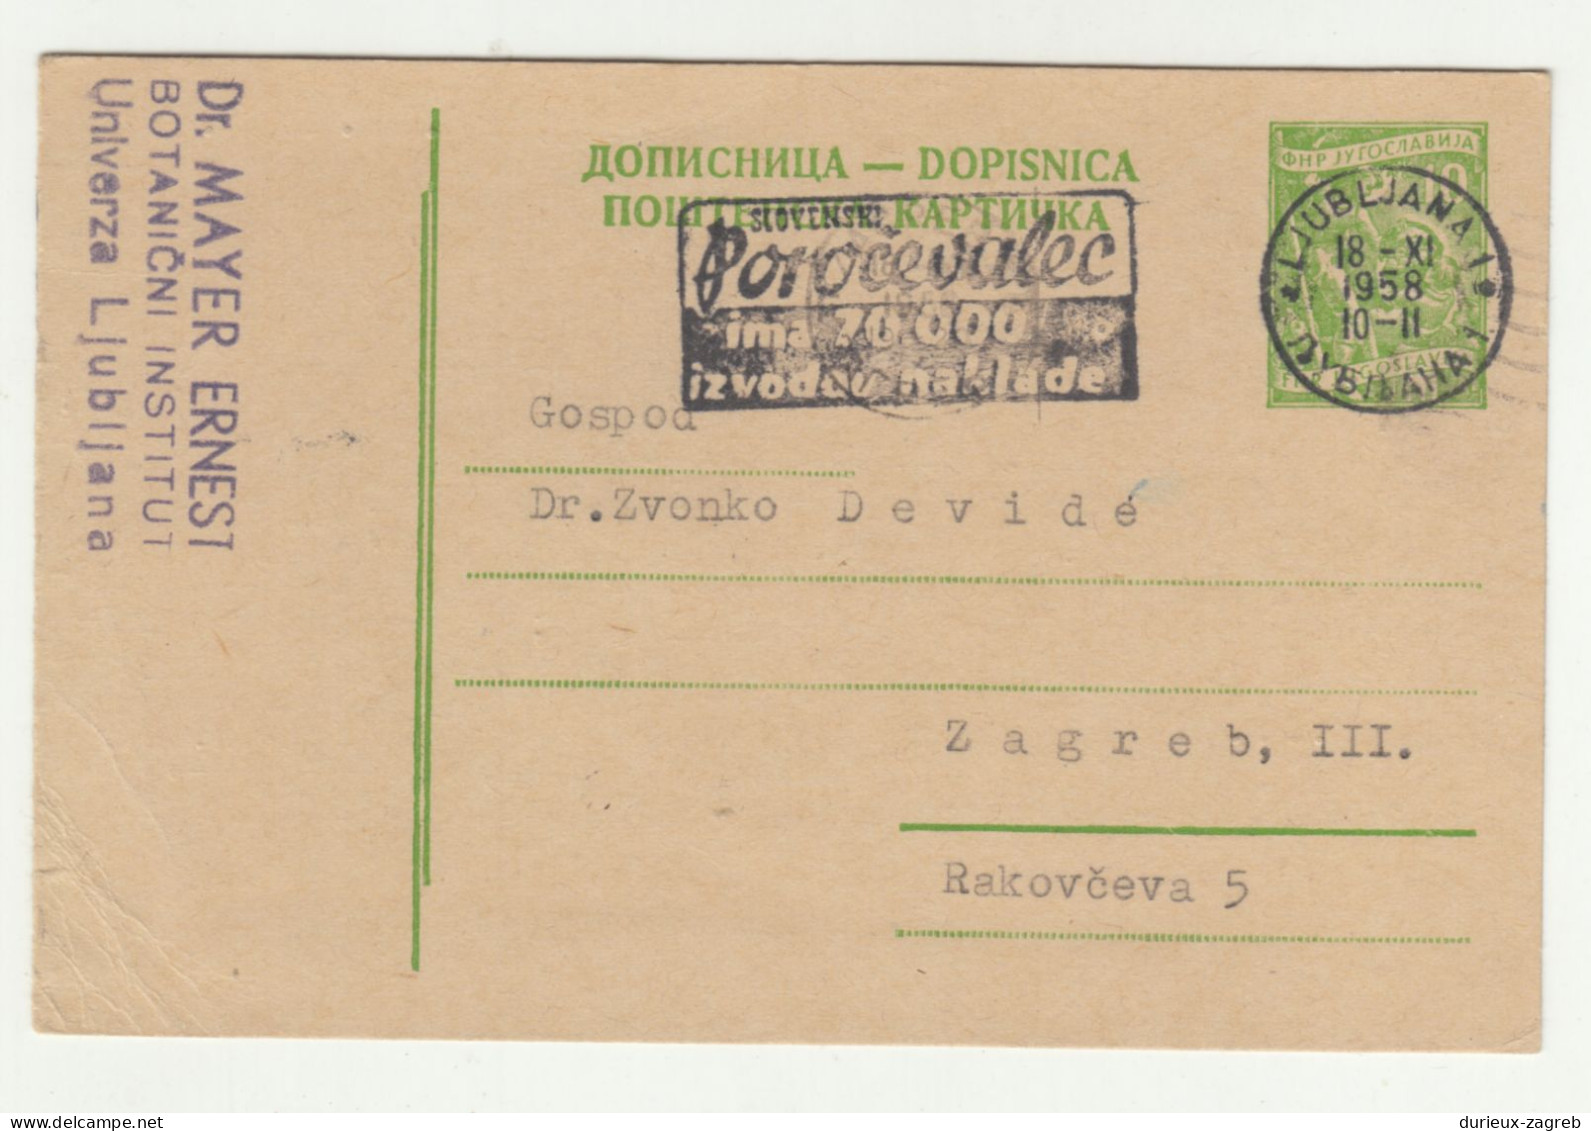 Poročevalec Slogan Postmark On Postal Stationery Postcard Posted 1958 Ljubljana B240503 - Eslovenia